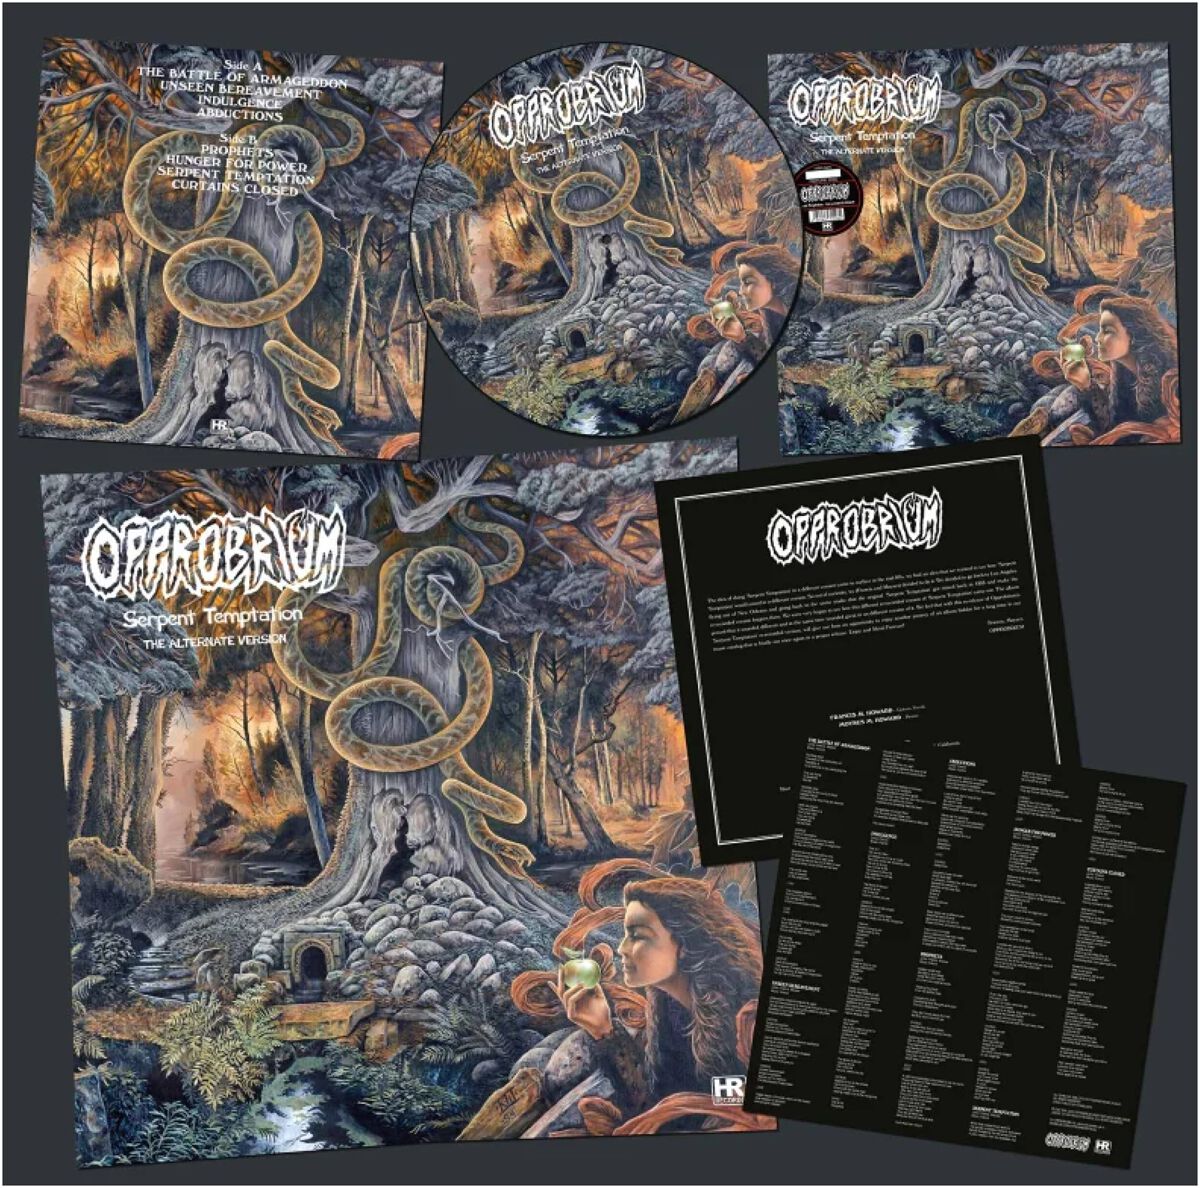 Serpent temptation - The Alternate Version 1996 von Opprobrium - LP (Limited Edition, Picture, Re-Release, Standard)